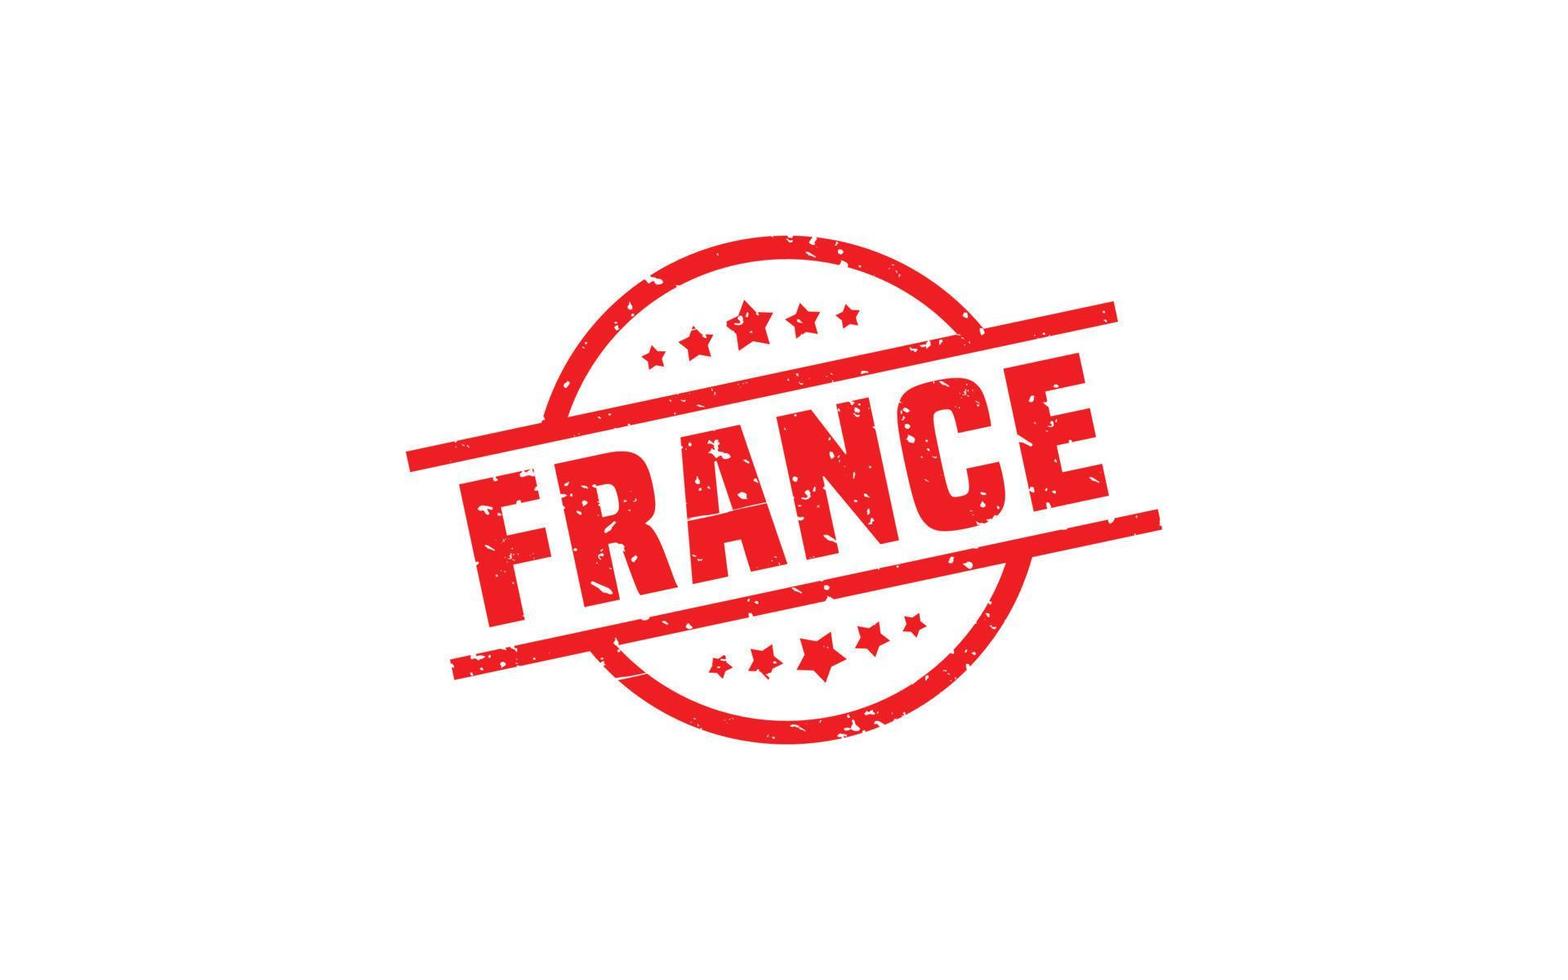 Frankreich Stempelgummi mit Grunge-Stil auf weißem Hintergrund vektor